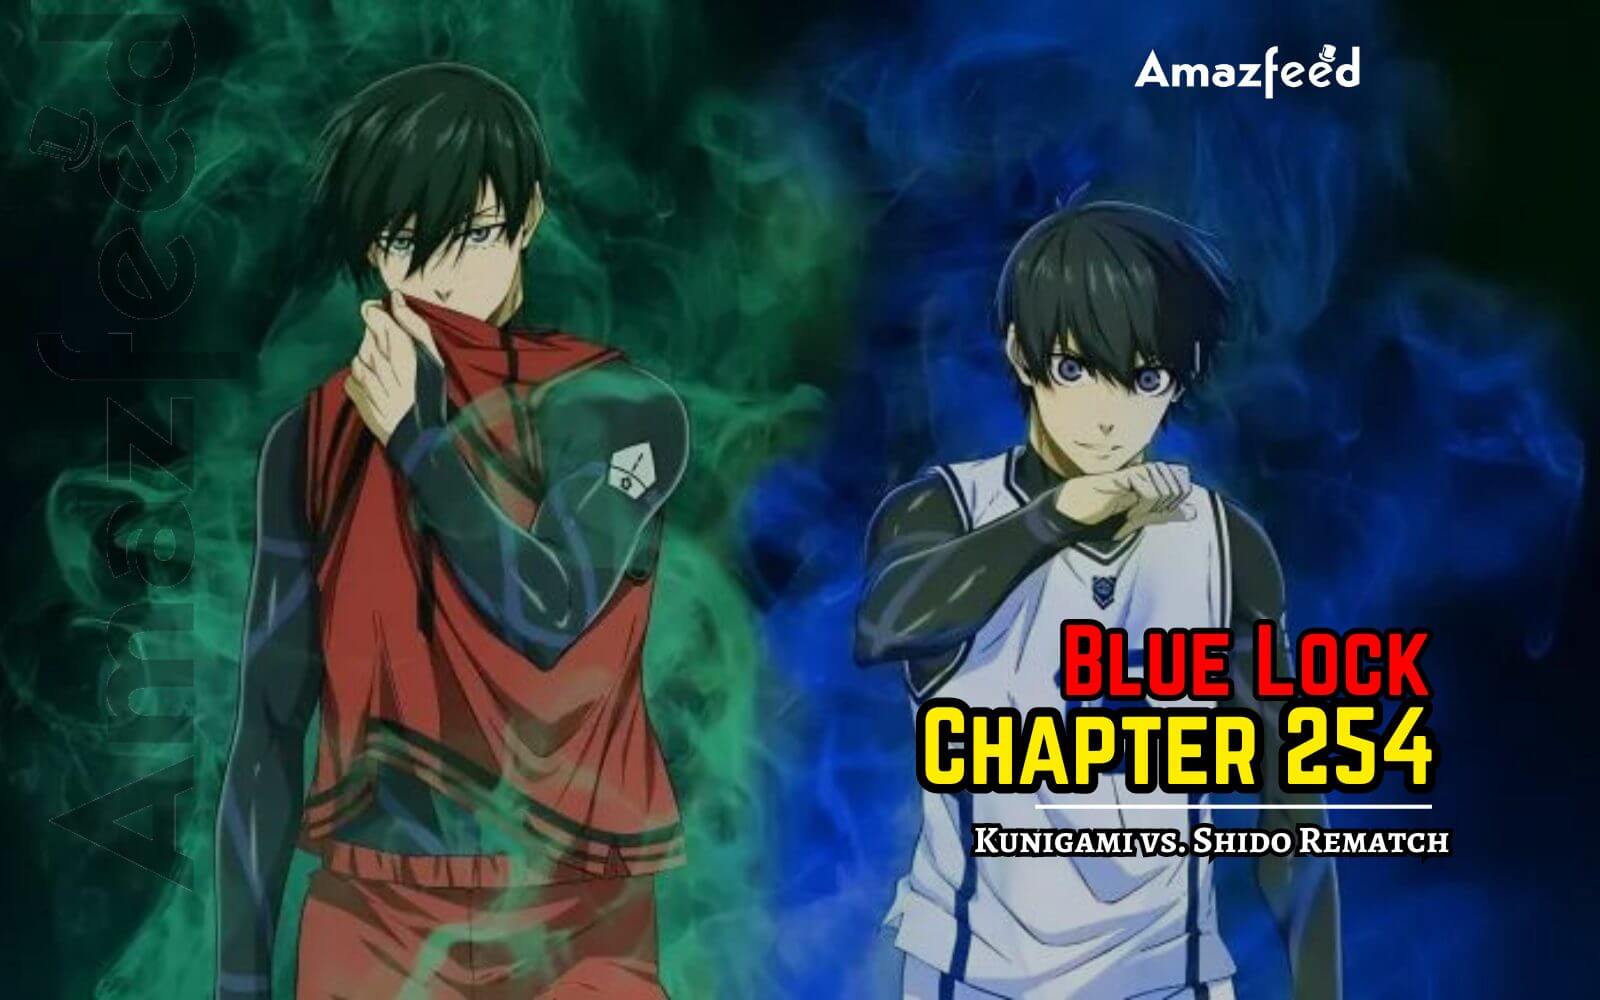 Blue Lock Chapter 254 Spoiler Revealed